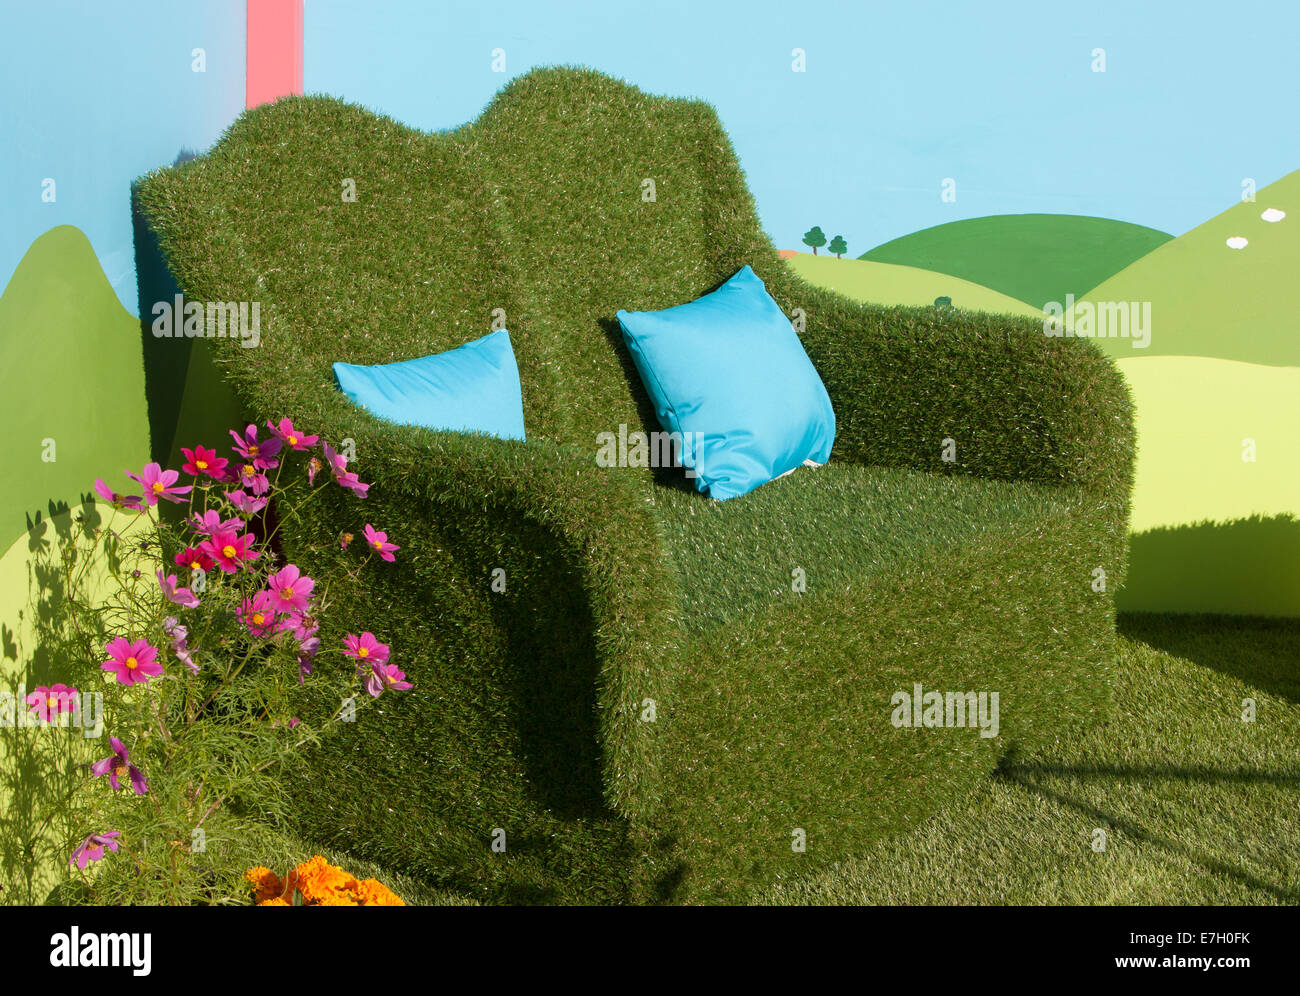 Jardín - Making Sense - sofá cubierto de césped artificial con el cosmos y caléndula plantas creciendo en niños Foto de stock